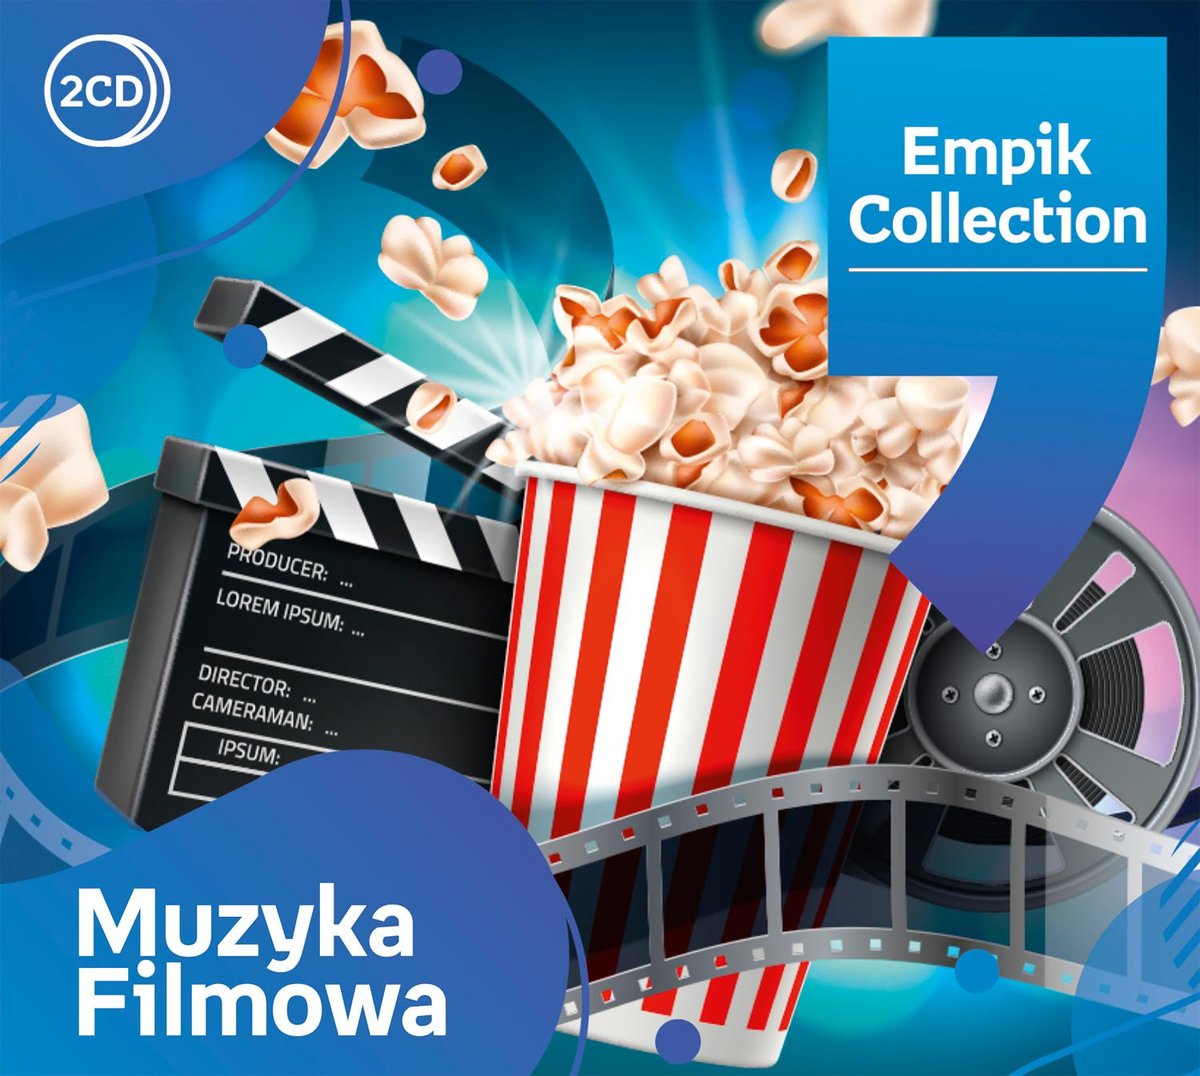 empik-collection-muzyka-filmowa-various-artists-muzyka-sklep-empik-com